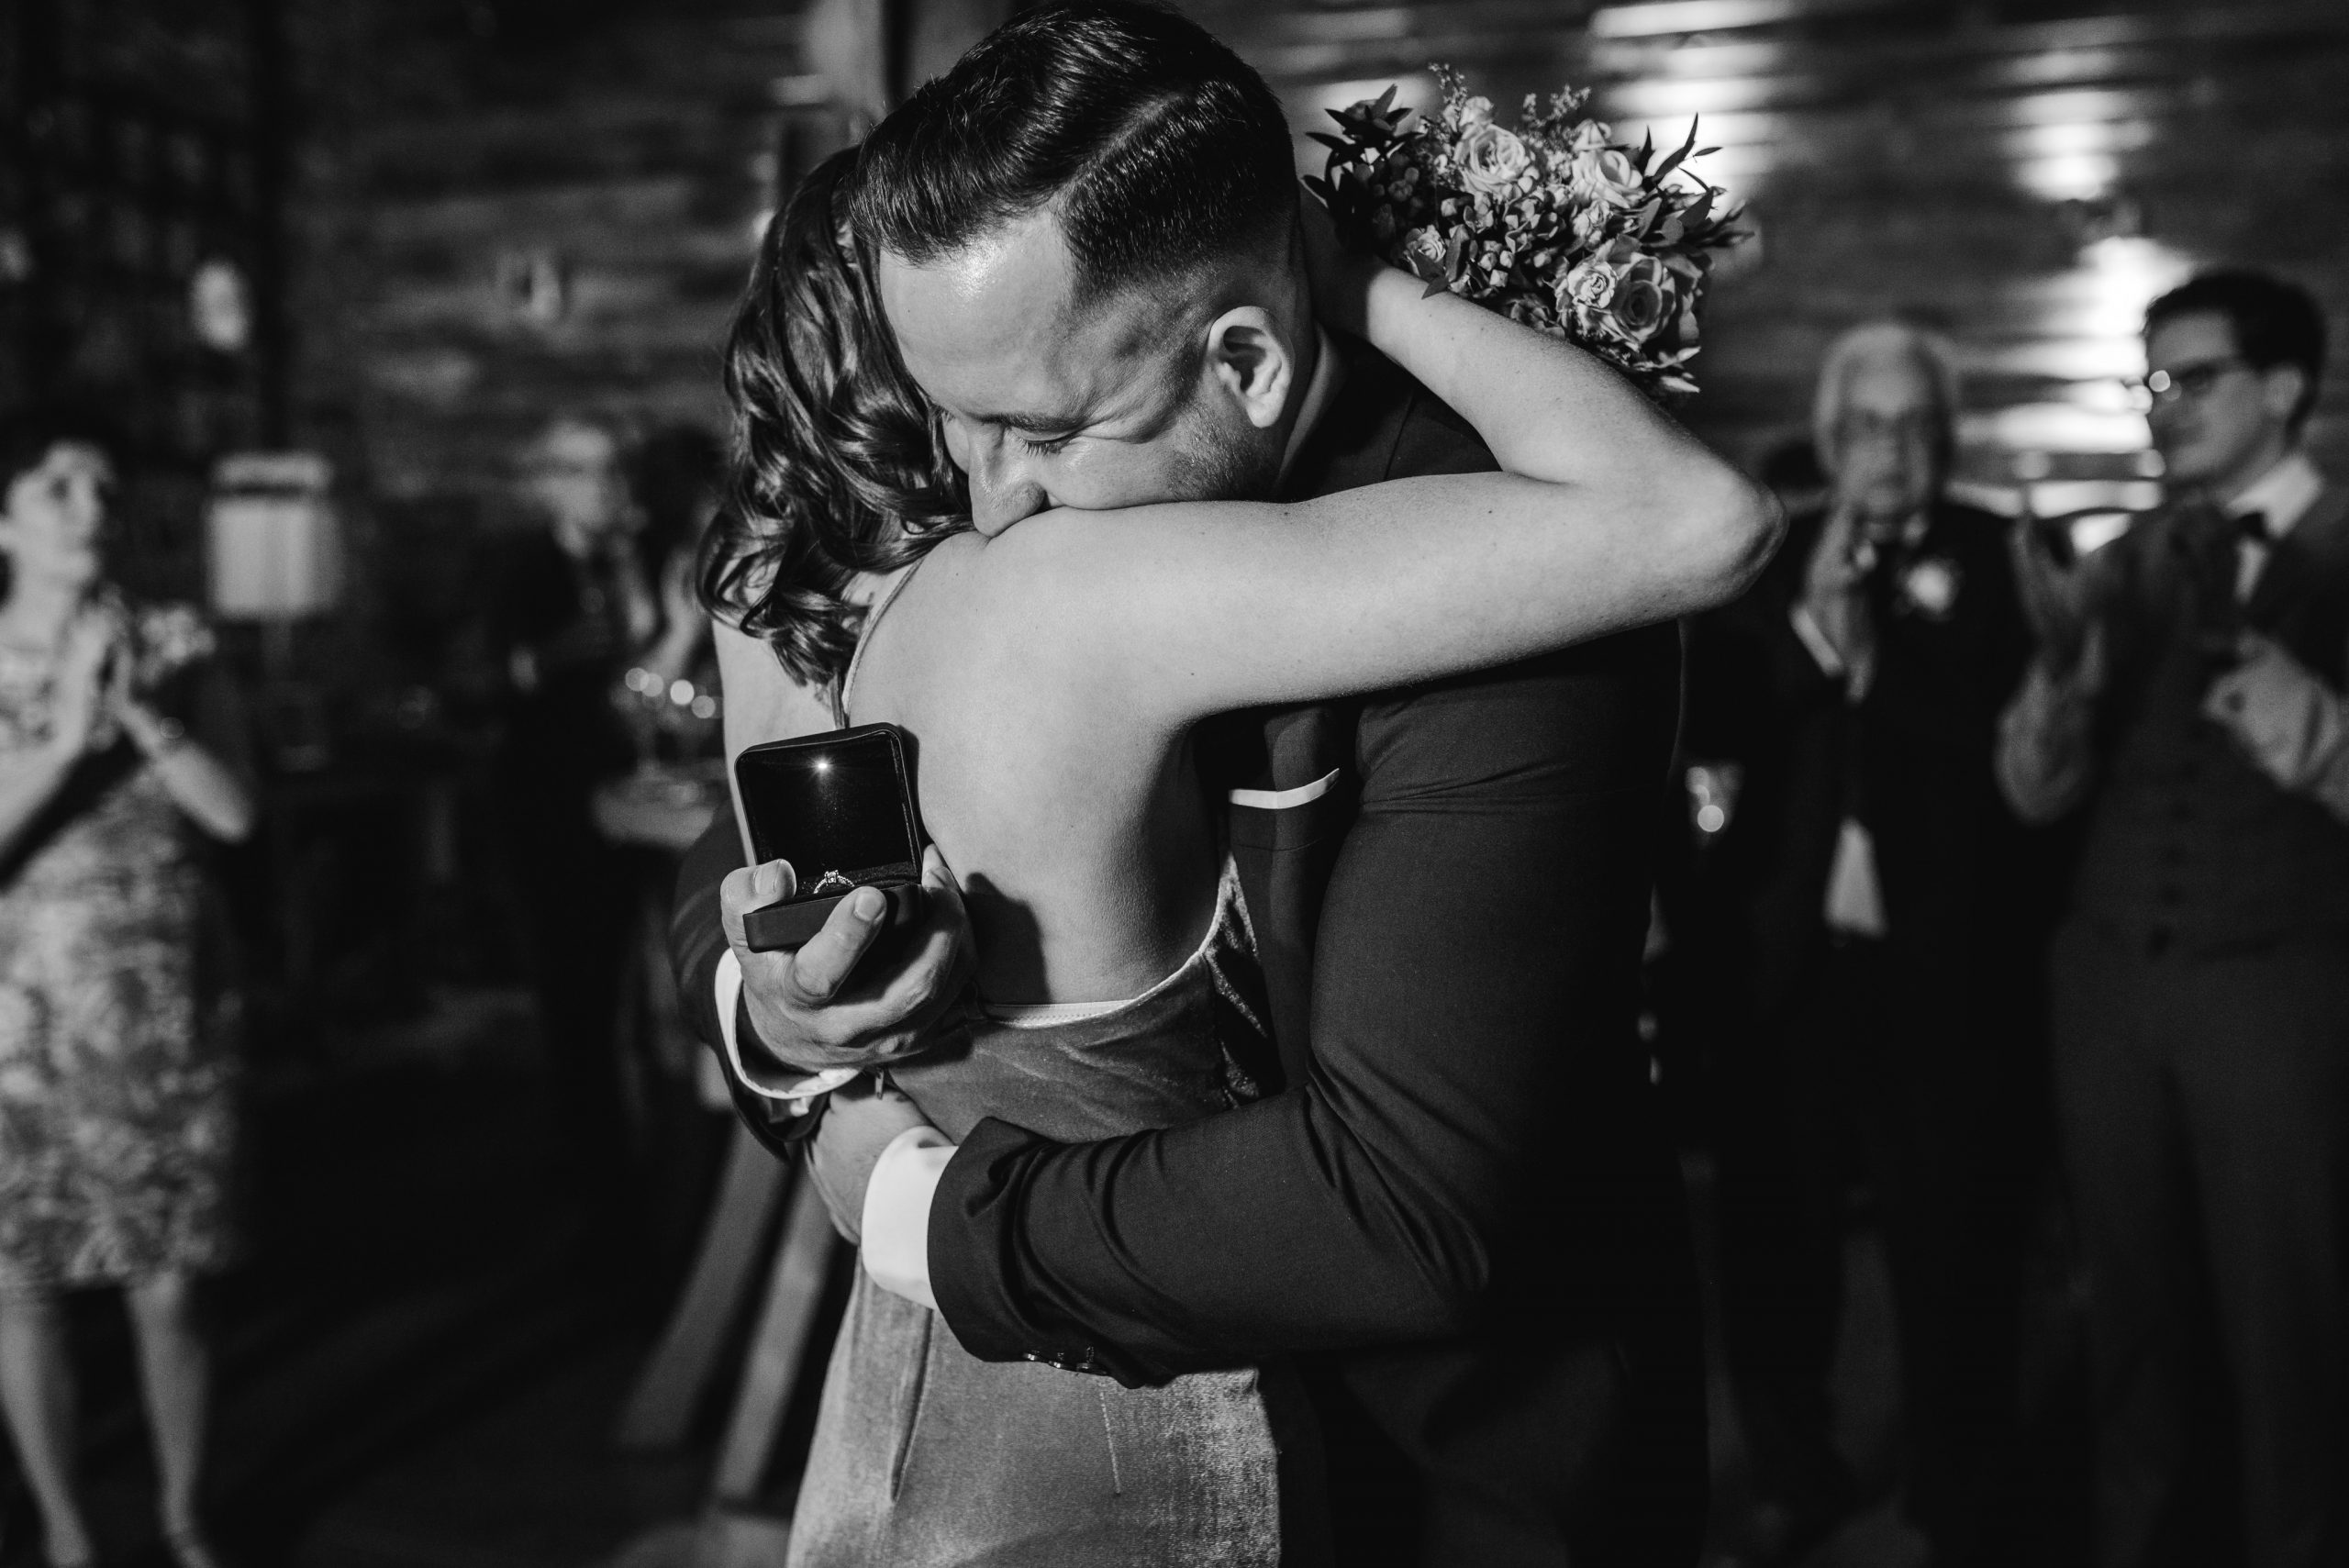 Grubenglück Hochzeitsfotografie Verlobung